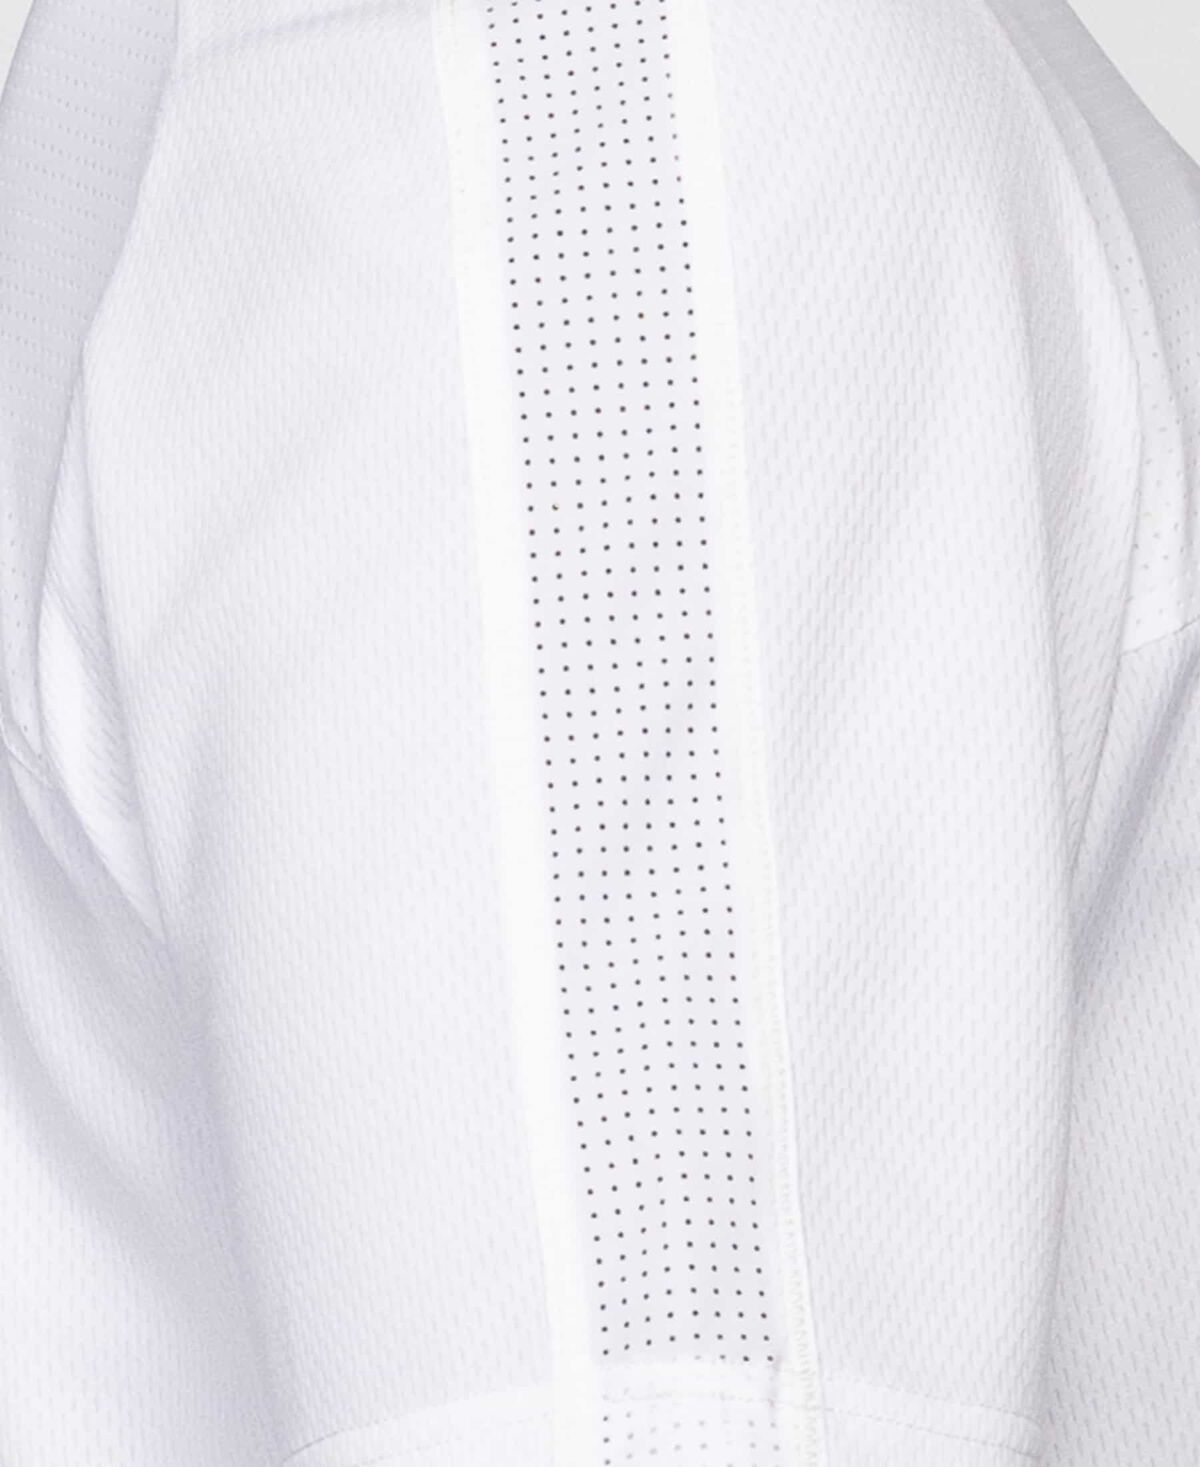 Men's 1/4 Zip Short Sleeve Anorak - White - Small 